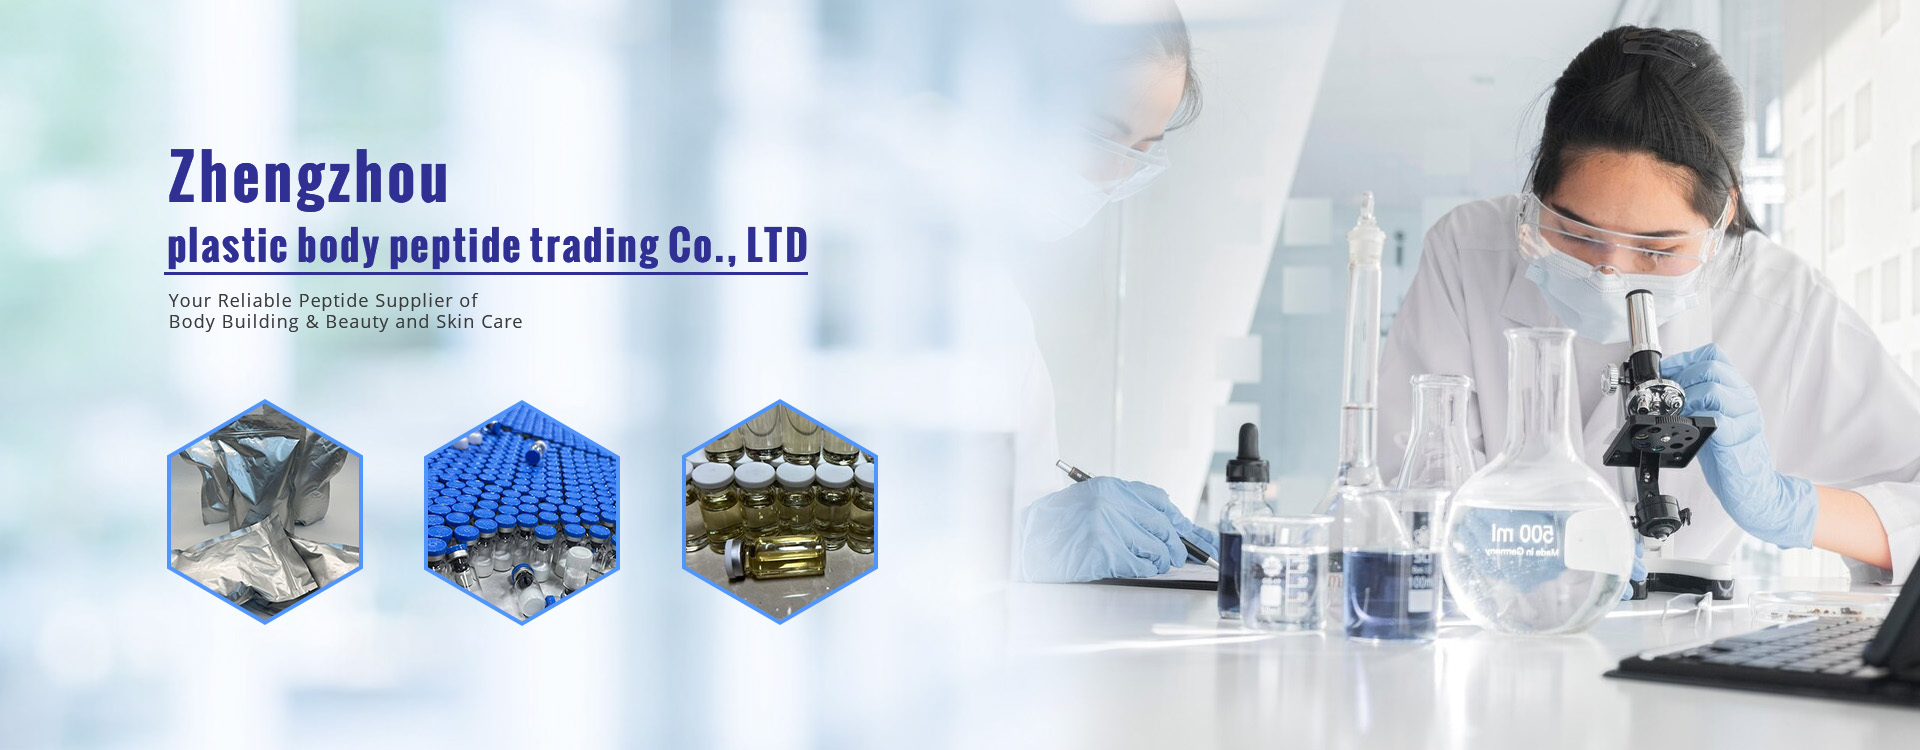 Zhengzhou plastic body peptide trading Co., LTD